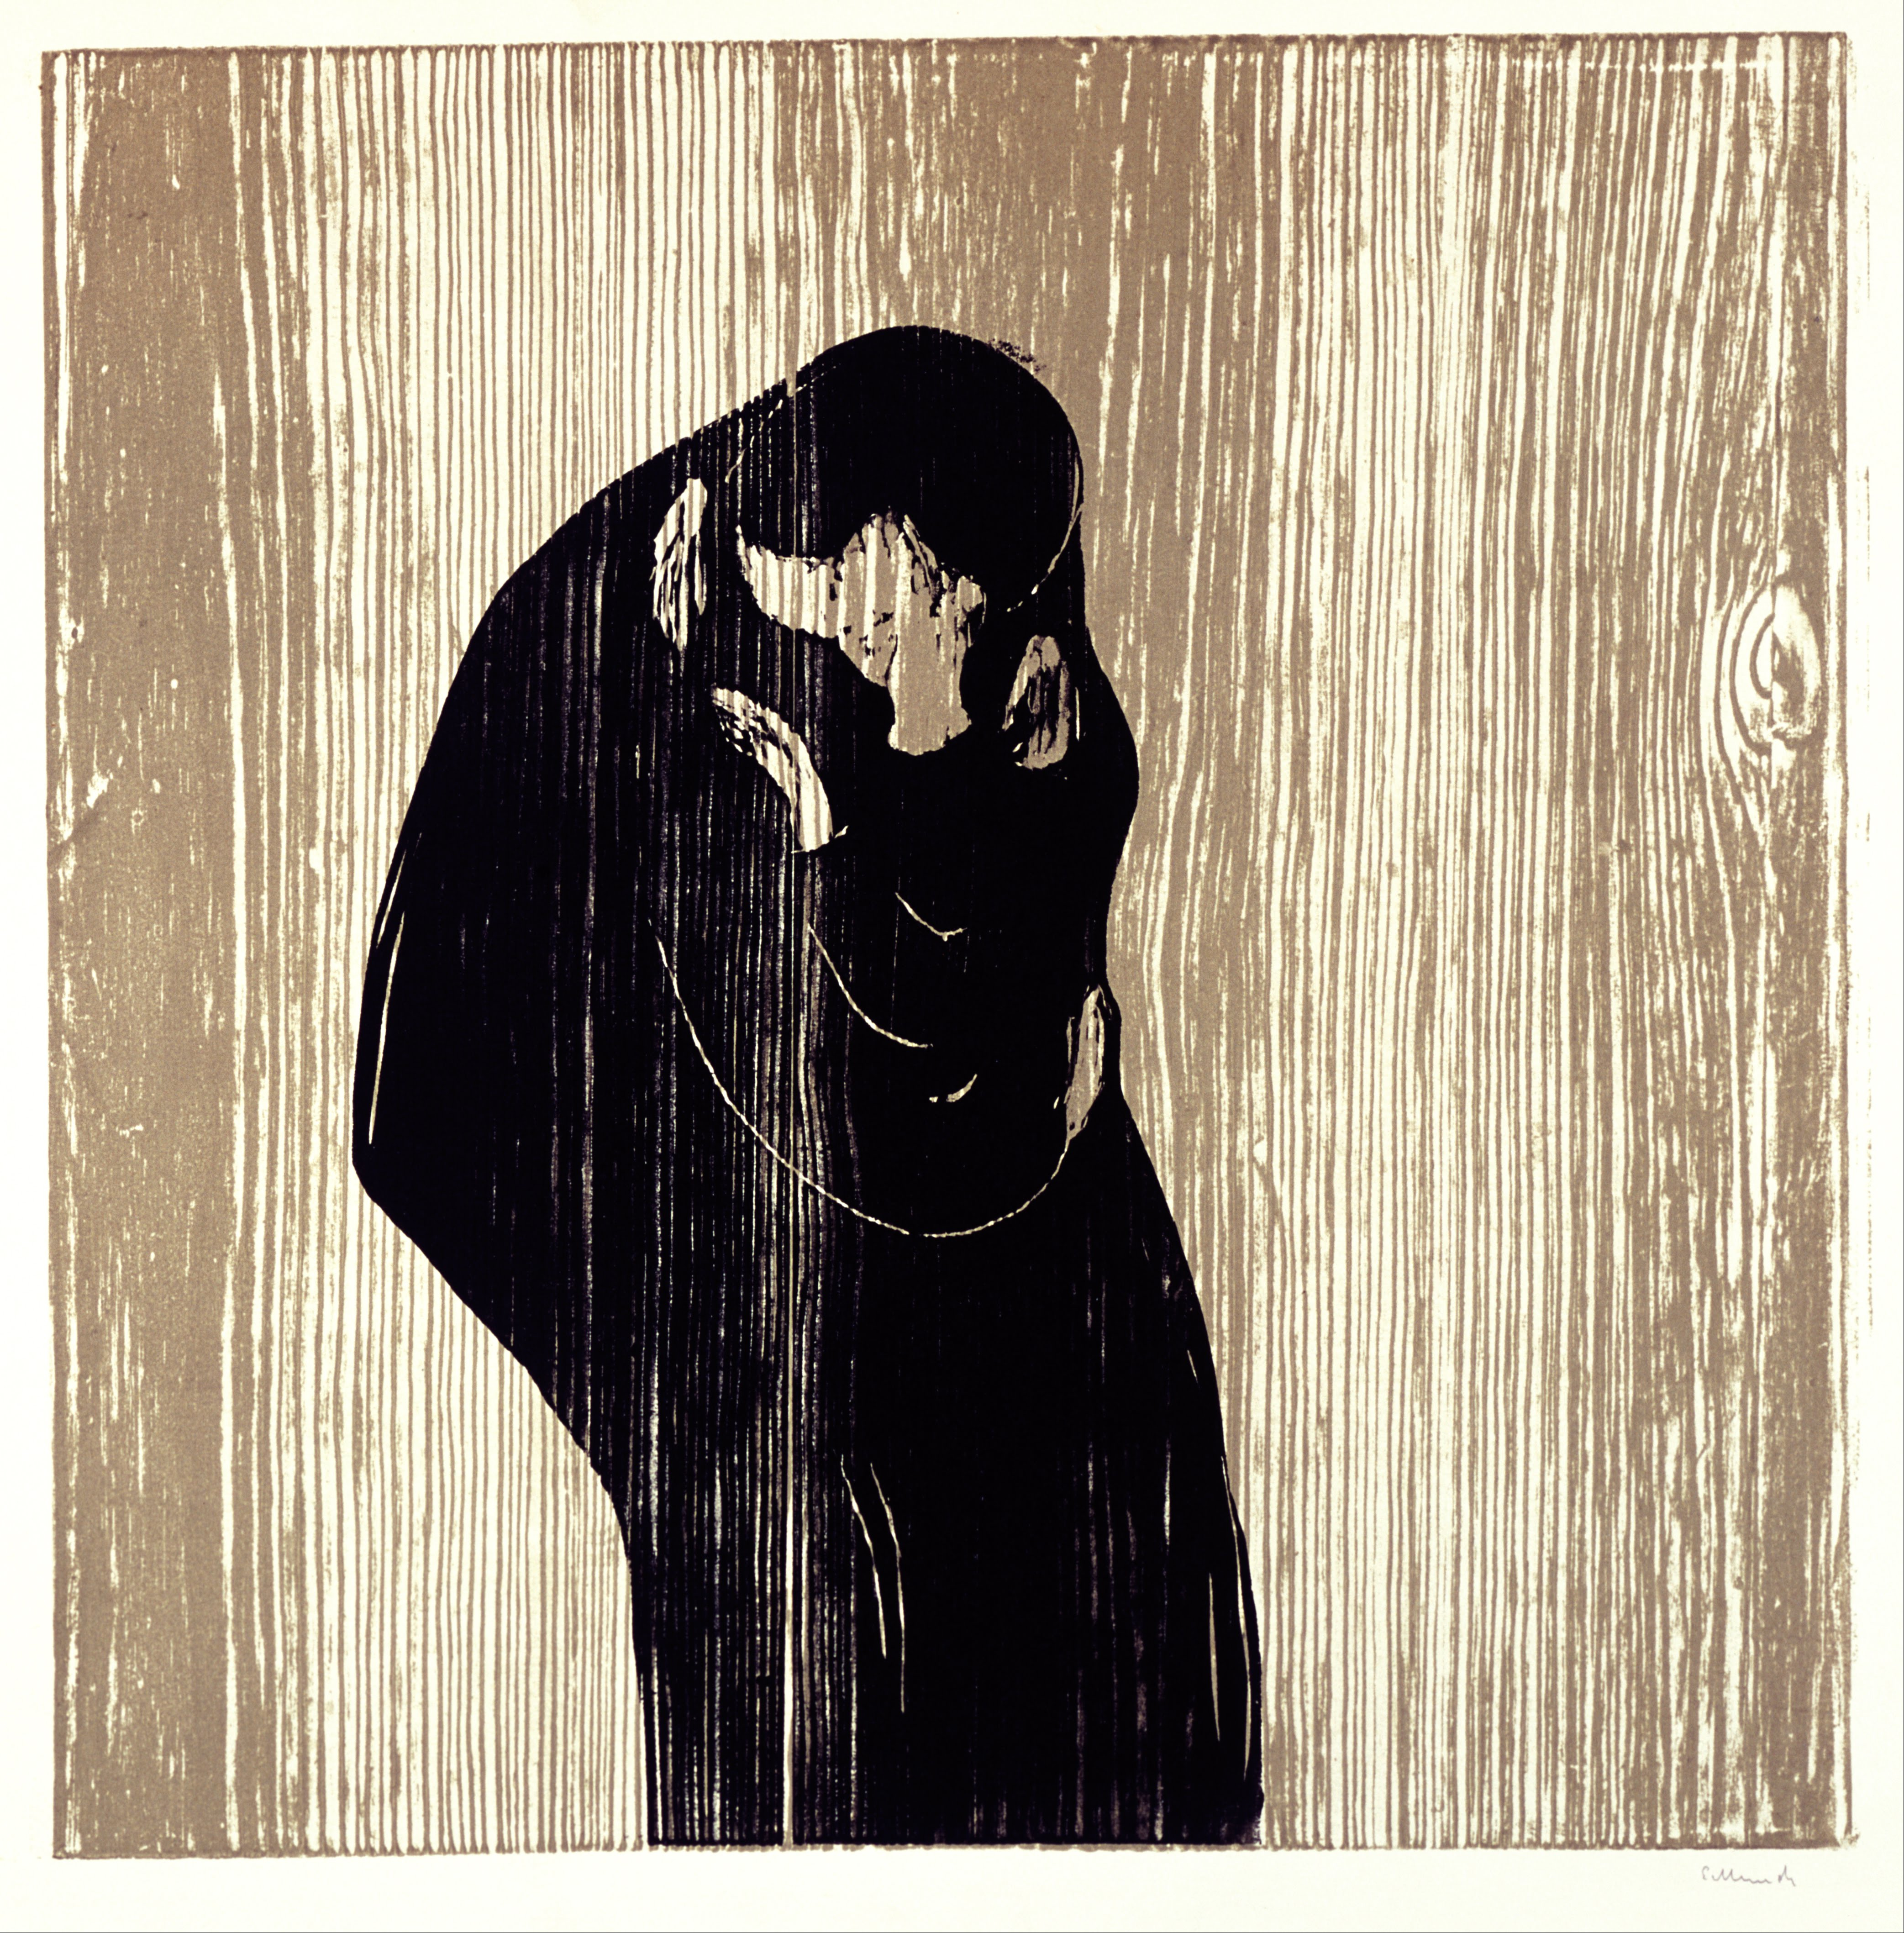 O beijo IV by Edvard Munch - 1902 